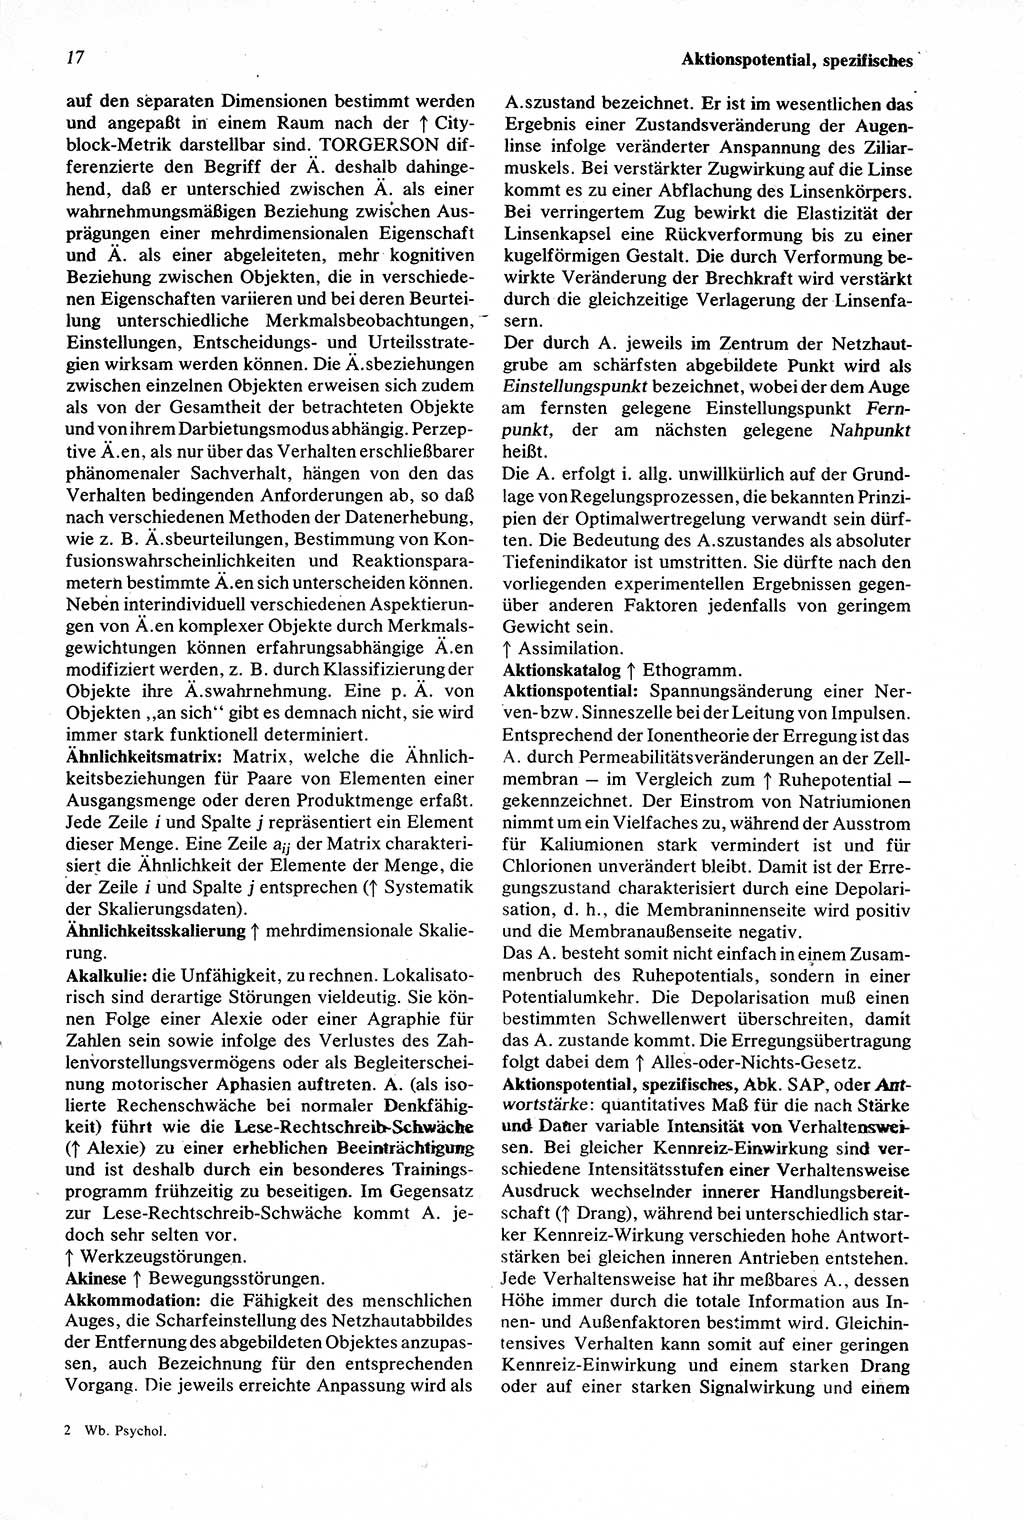 Wörterbuch der Psychologie [Deutsche Demokratische Republik (DDR)] 1976, Seite 17 (Wb. Psych. DDR 1976, S. 17)